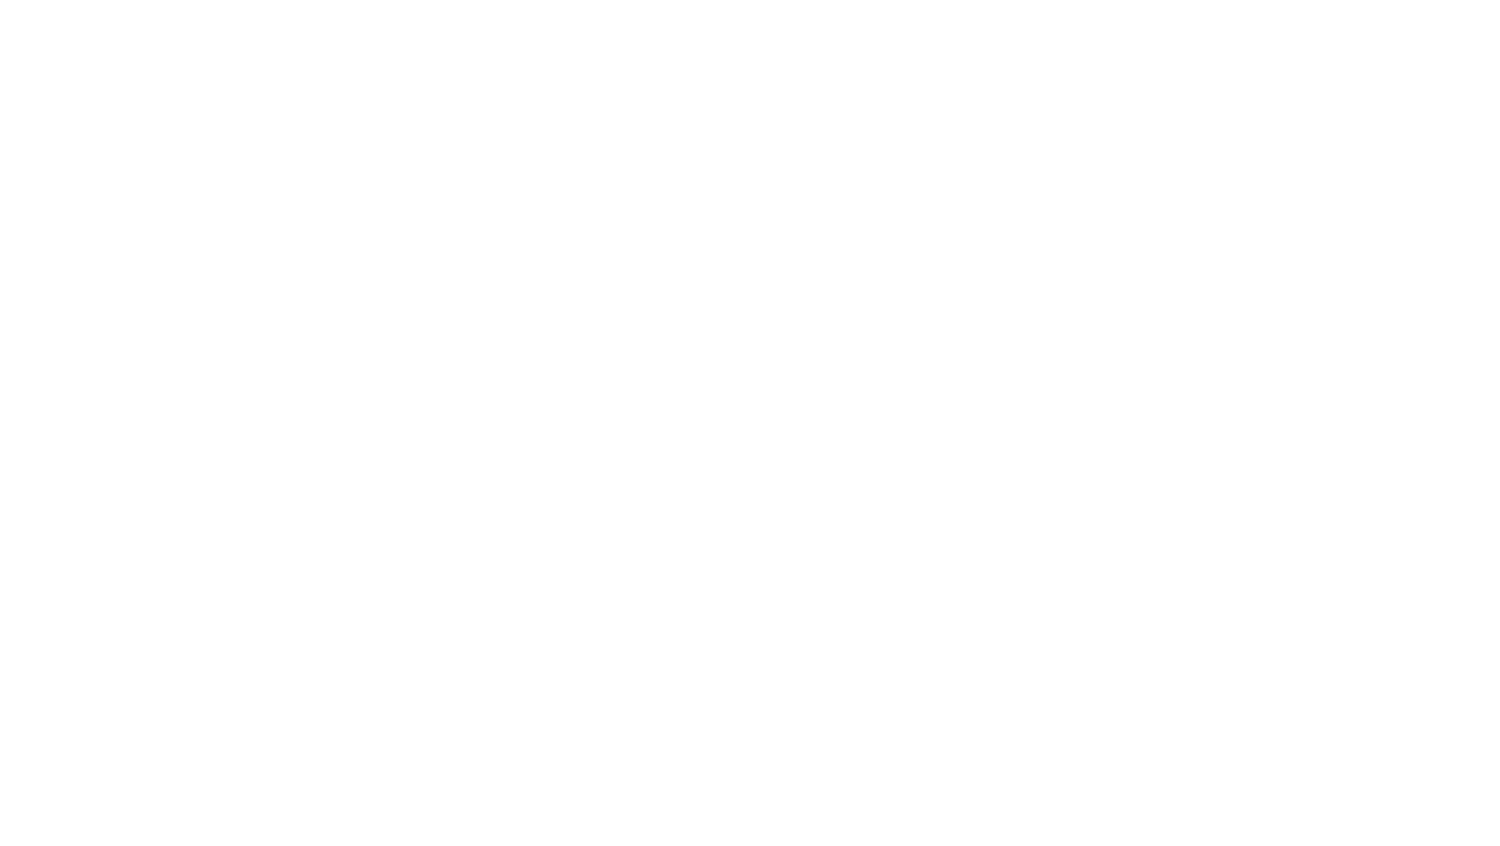 CETI | Transformative Textile